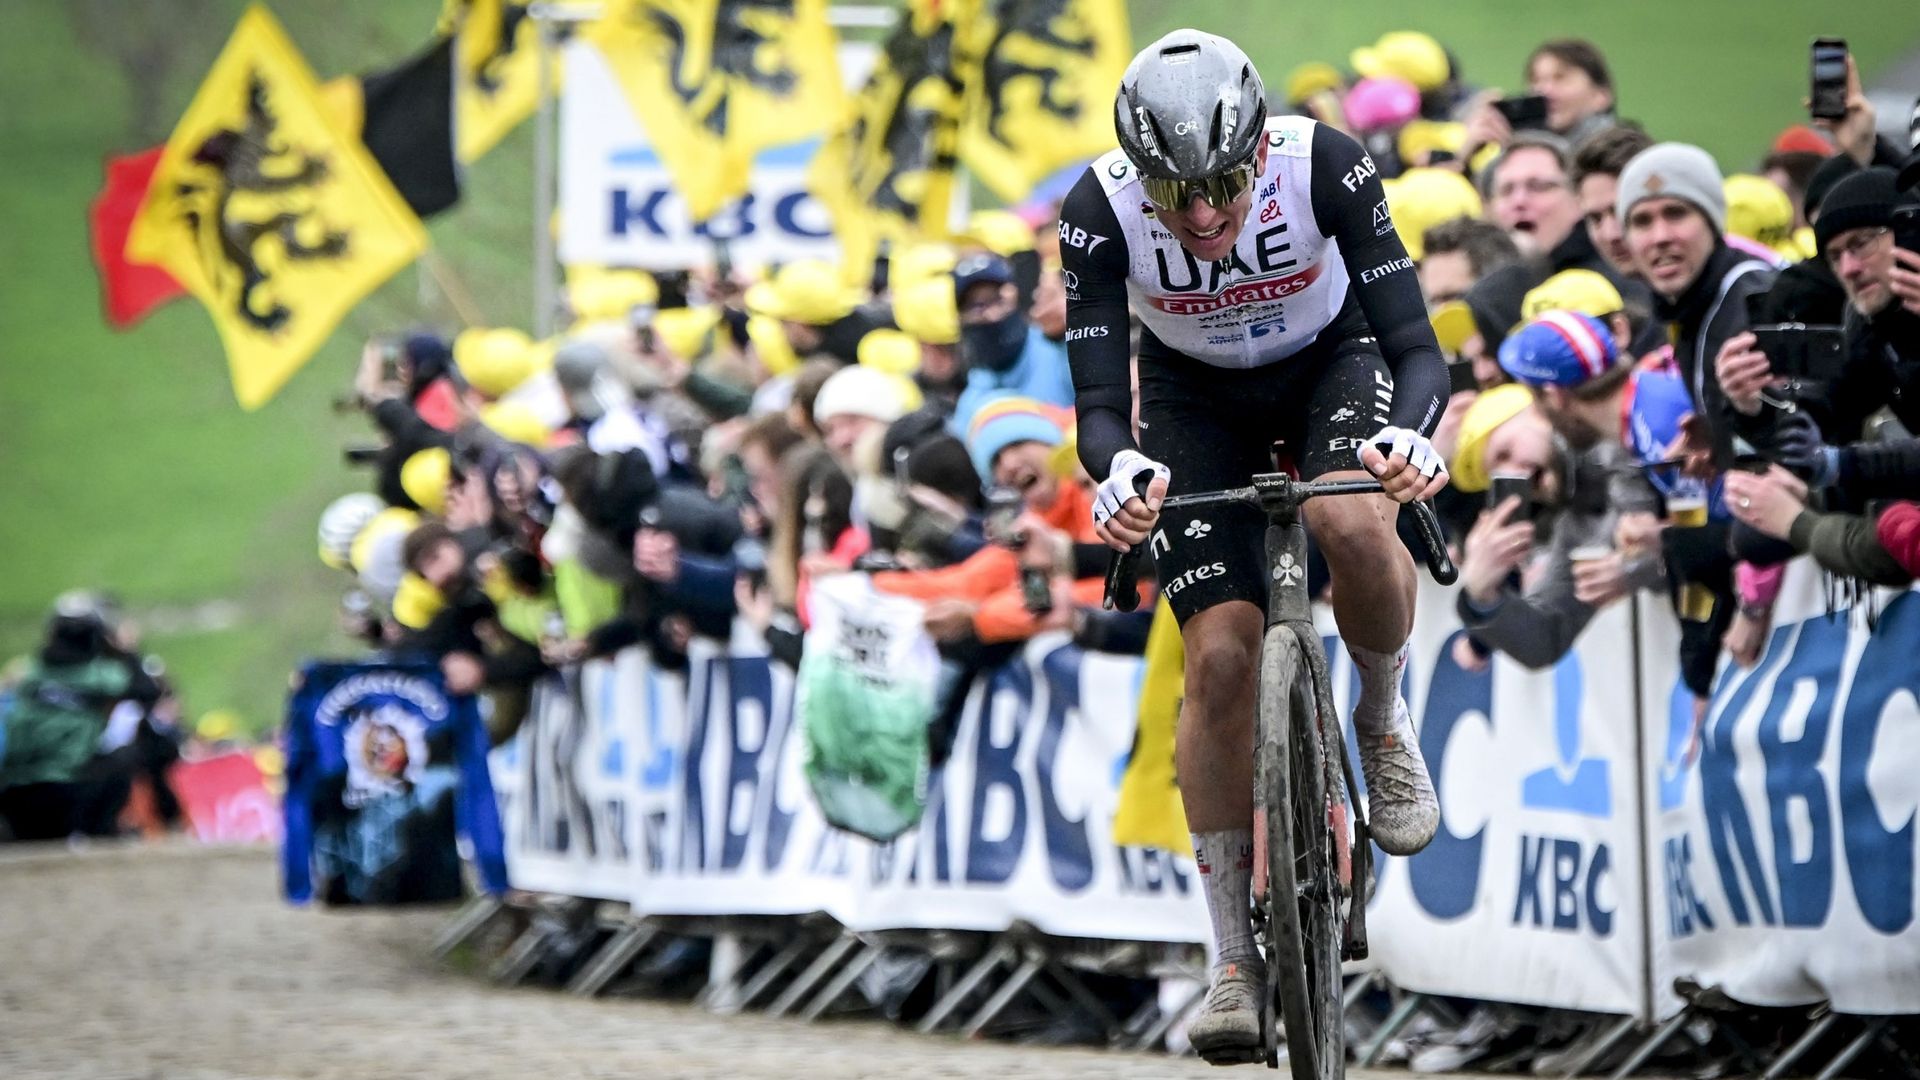 Cyclisme : Tadej Pogacar file vers la victoire sur les pavés du Tour des Flandres 2023. Cela fait 12 ans qu'un coureur flamand n'a plus remporté le Ronde. Le dernier en date est Tom Boonen, c'était en 2012. 